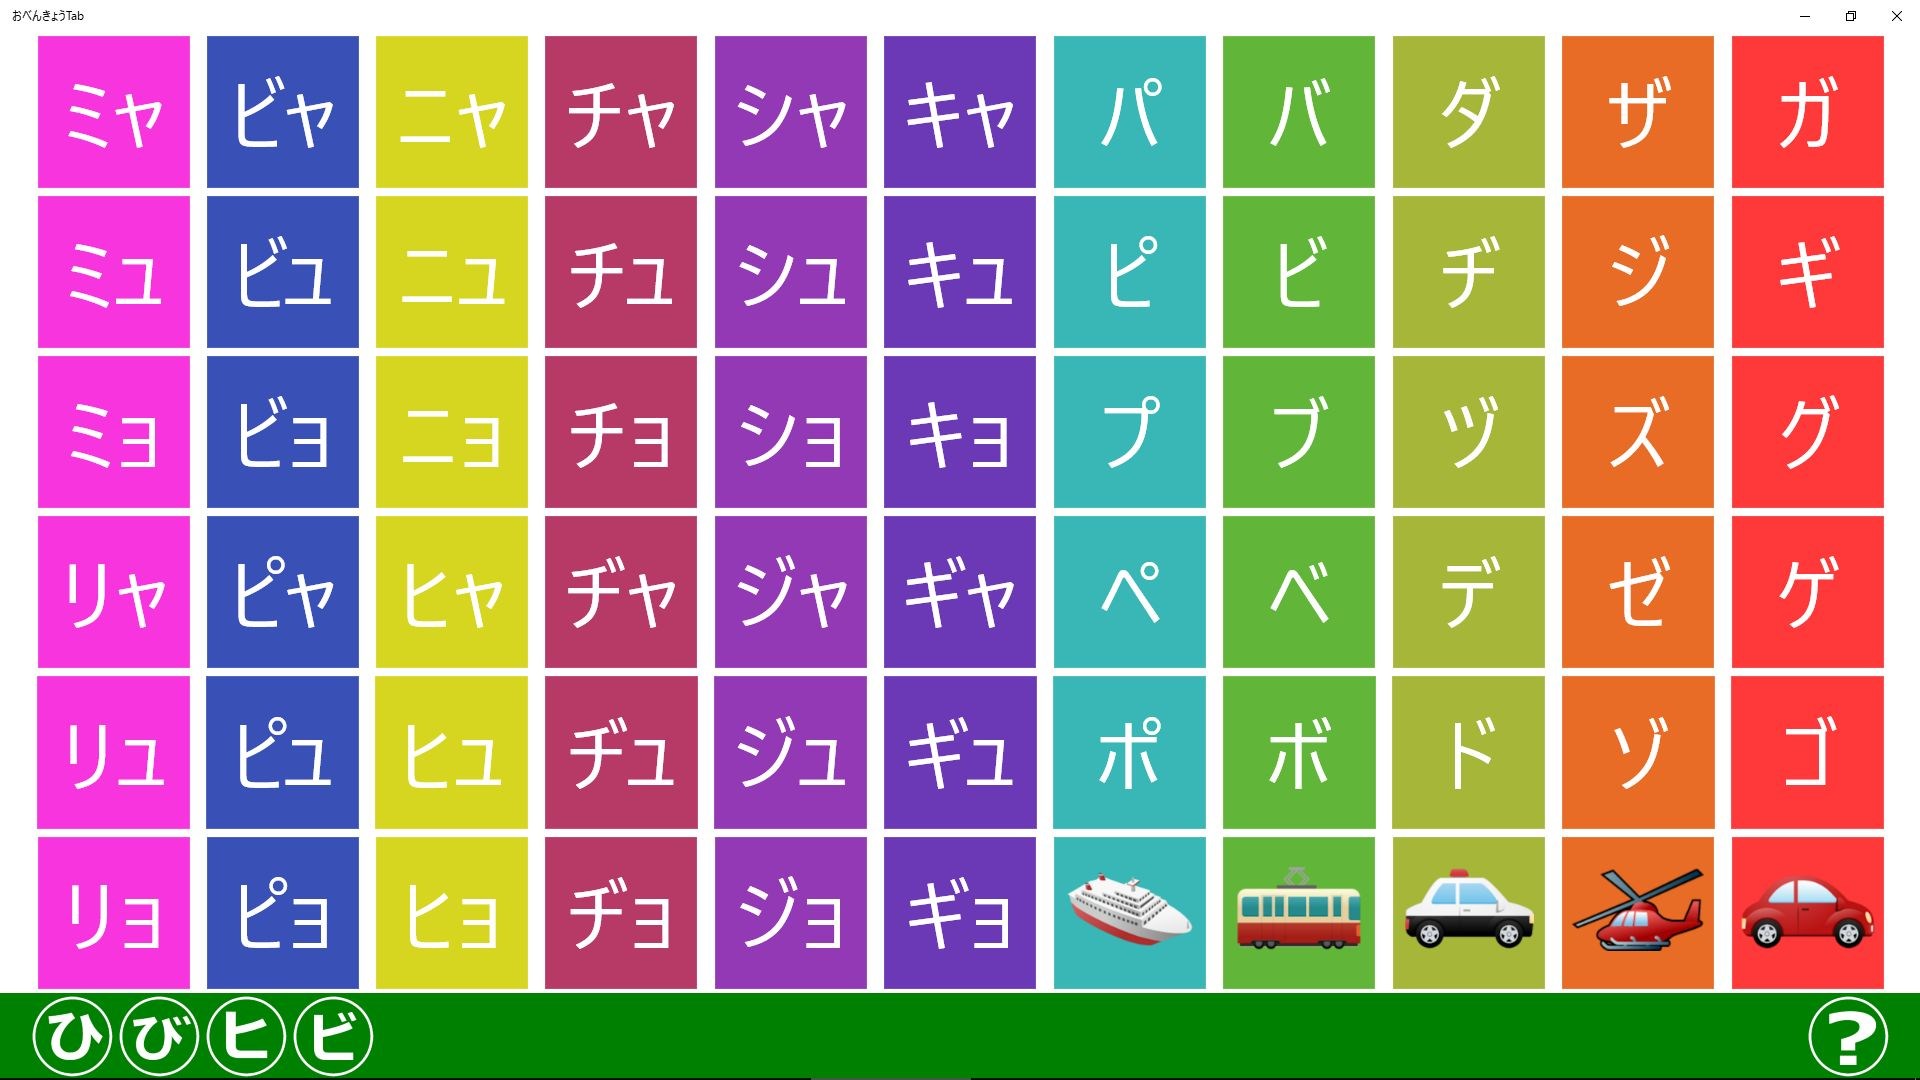 おべんきょうtab For Windows 10